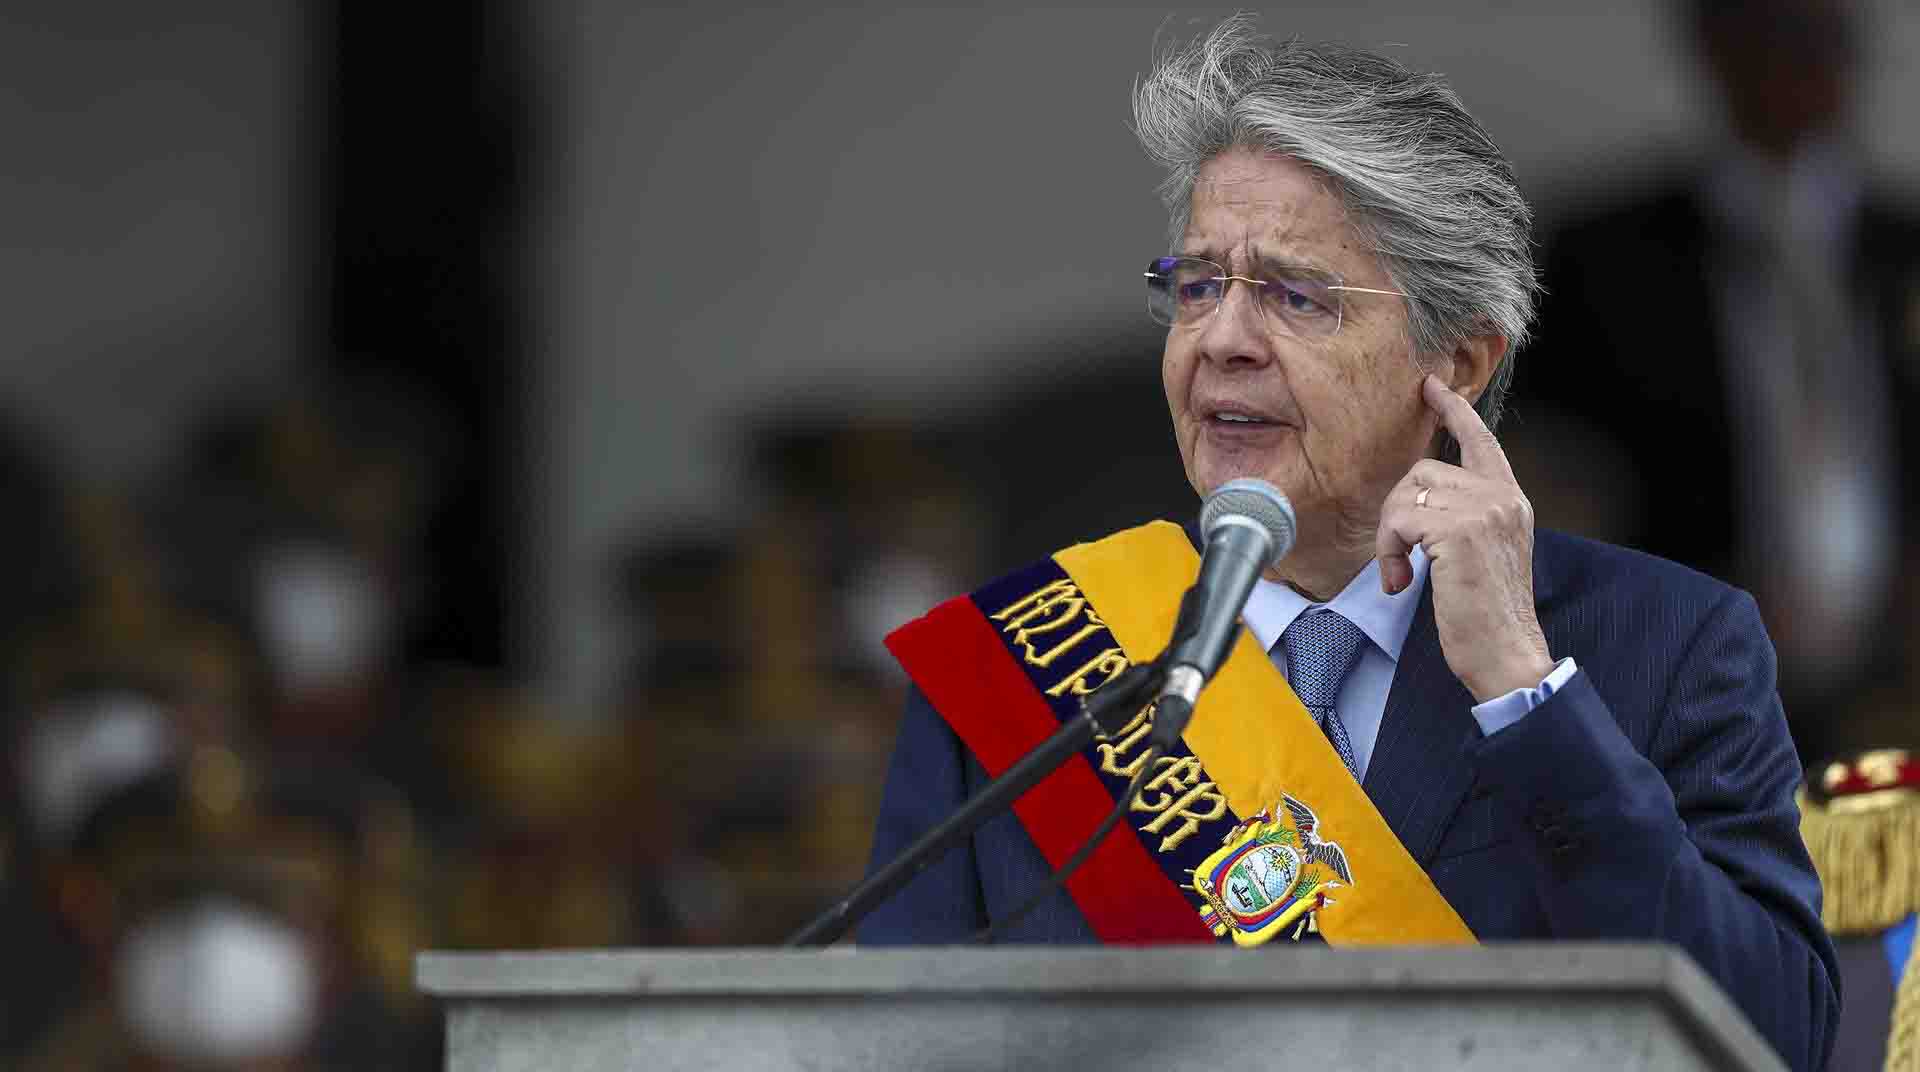 El presidente Guillermo Lasso aseguró este martes que "tiene sentido quitarle los subsidios a los ricos para dárselos a los pobres". Foto: EFE.